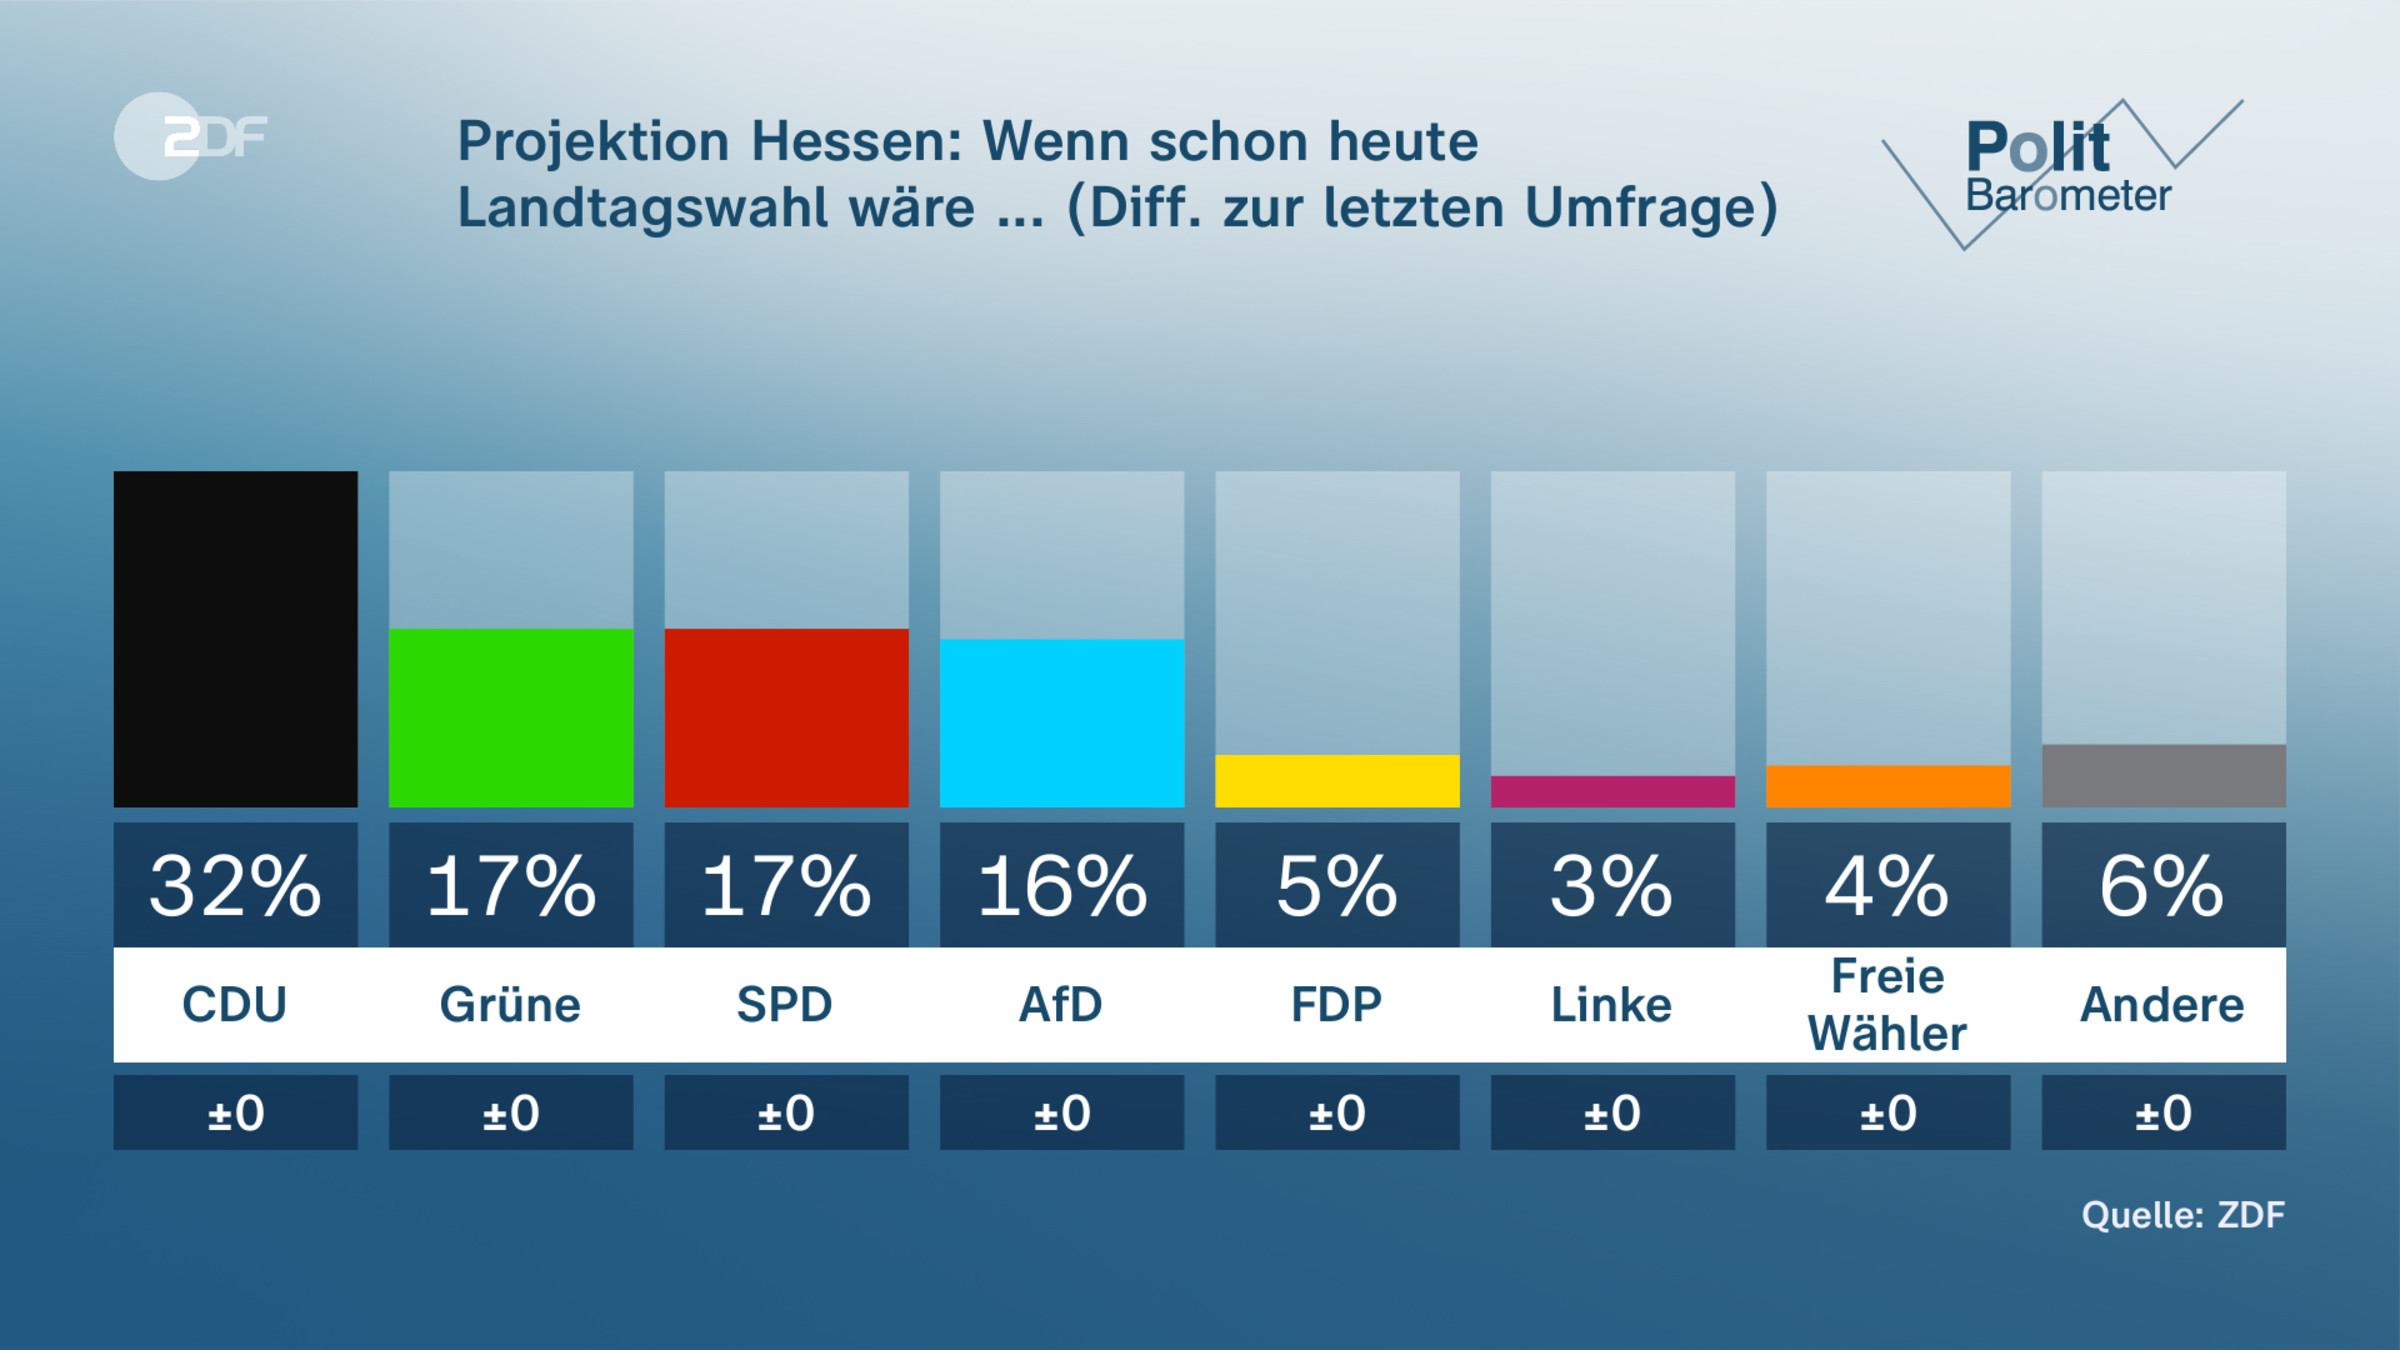 Projektion Hessen: Wenn schon heute Landtagswahl wäre ... (Diff. zur letzten Umfrage)